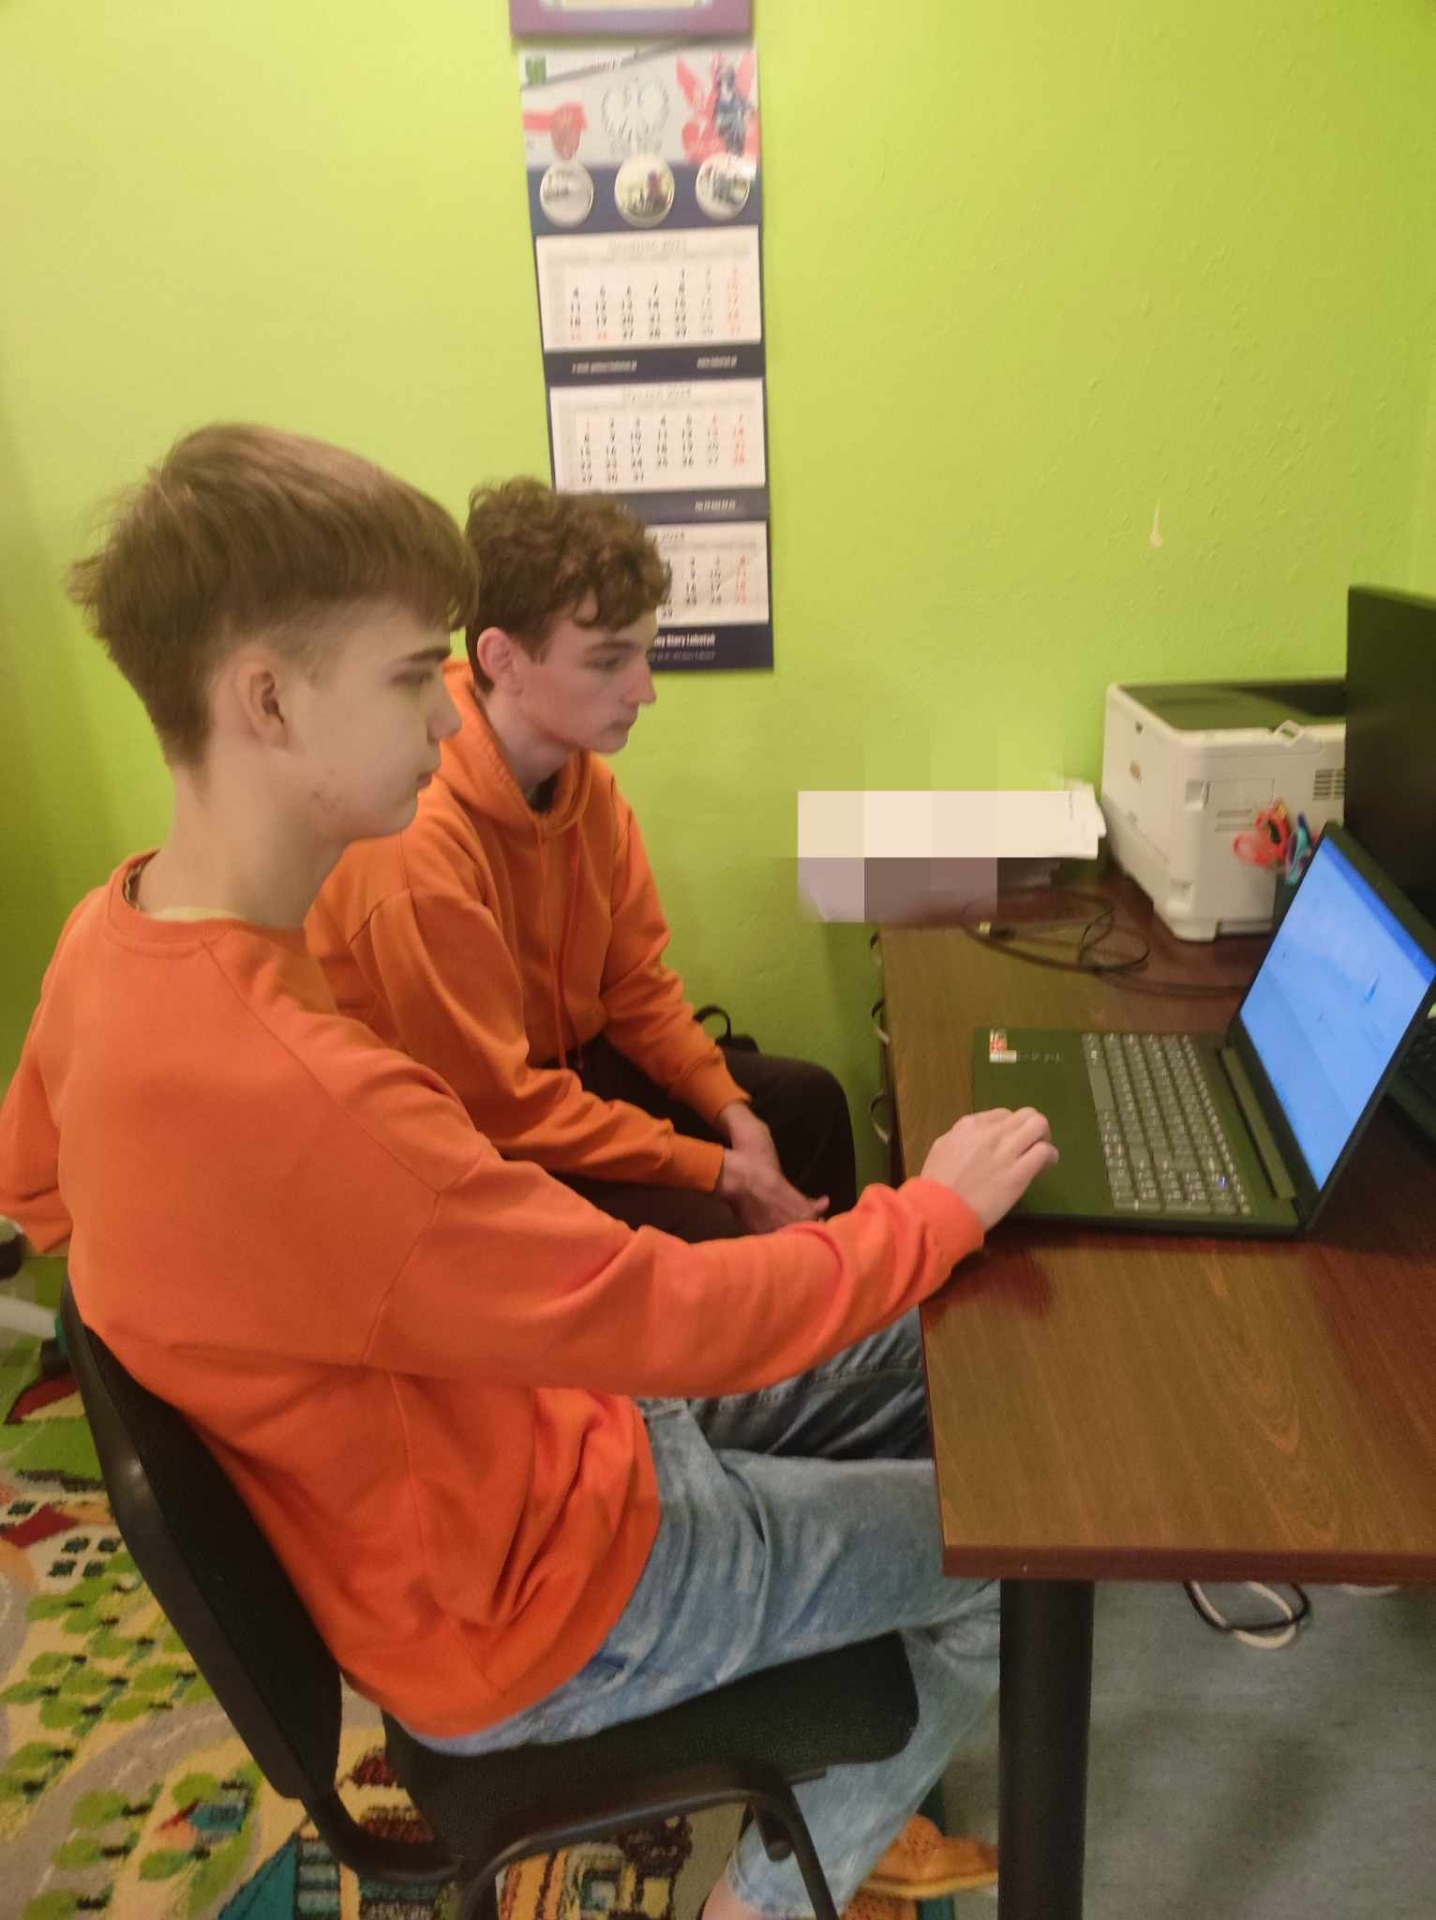 Uczniowie piszą konkurs na komputerze.